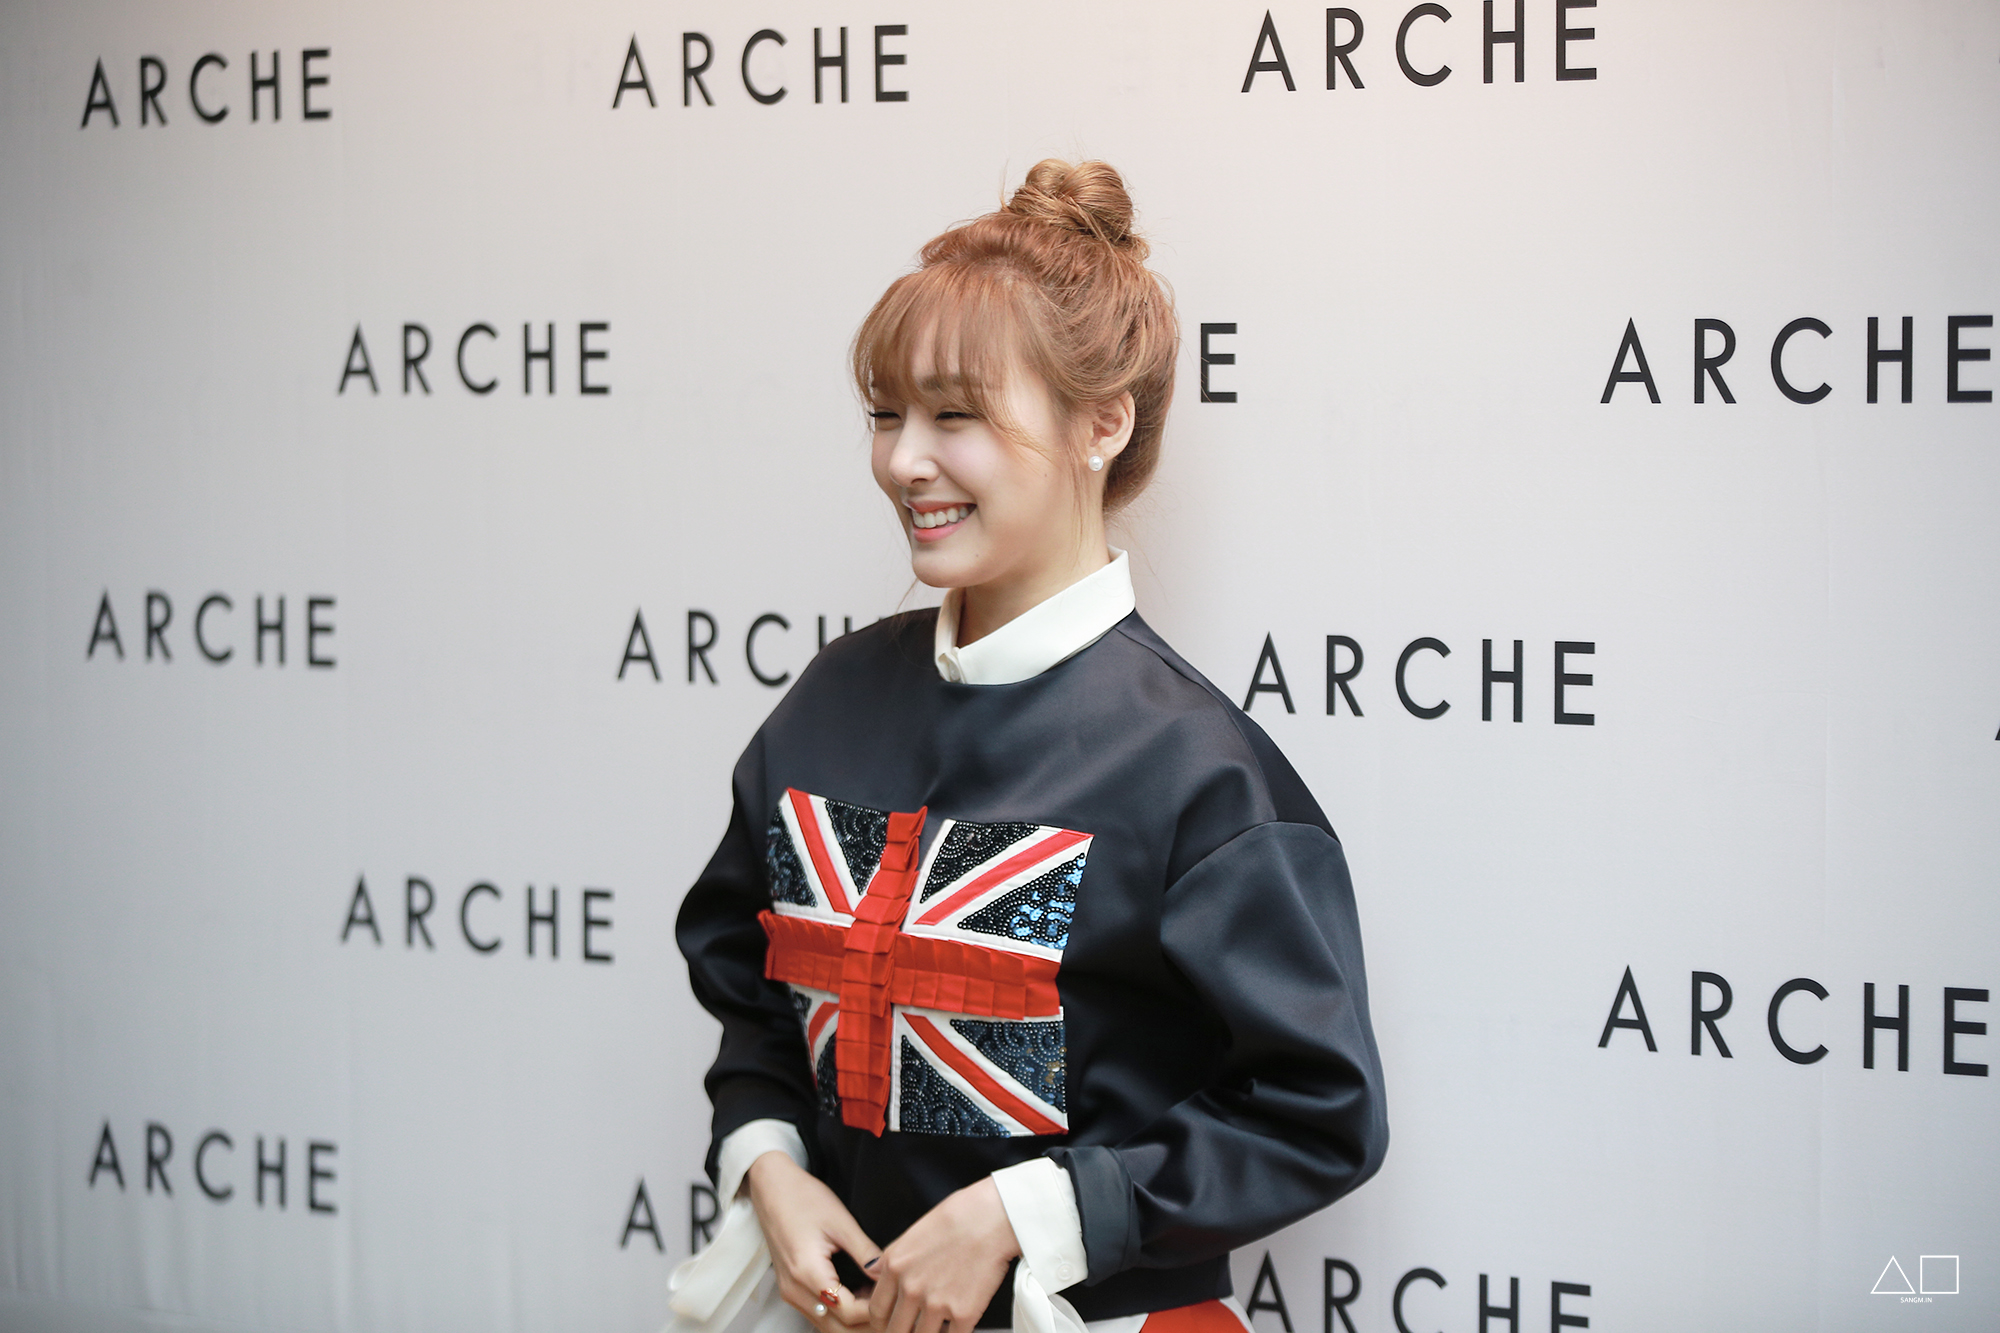 [PIC][20-10-2014]Tiffany xuất hiện tại buổi ra mắt BTS mới của thương hiệu "Arche" trong khuôn khổ tuần Lễ thời trang "2015 S/S SEOUL FASHION WEEK" vào chiều nay 15396938667_55fc8b931f_o